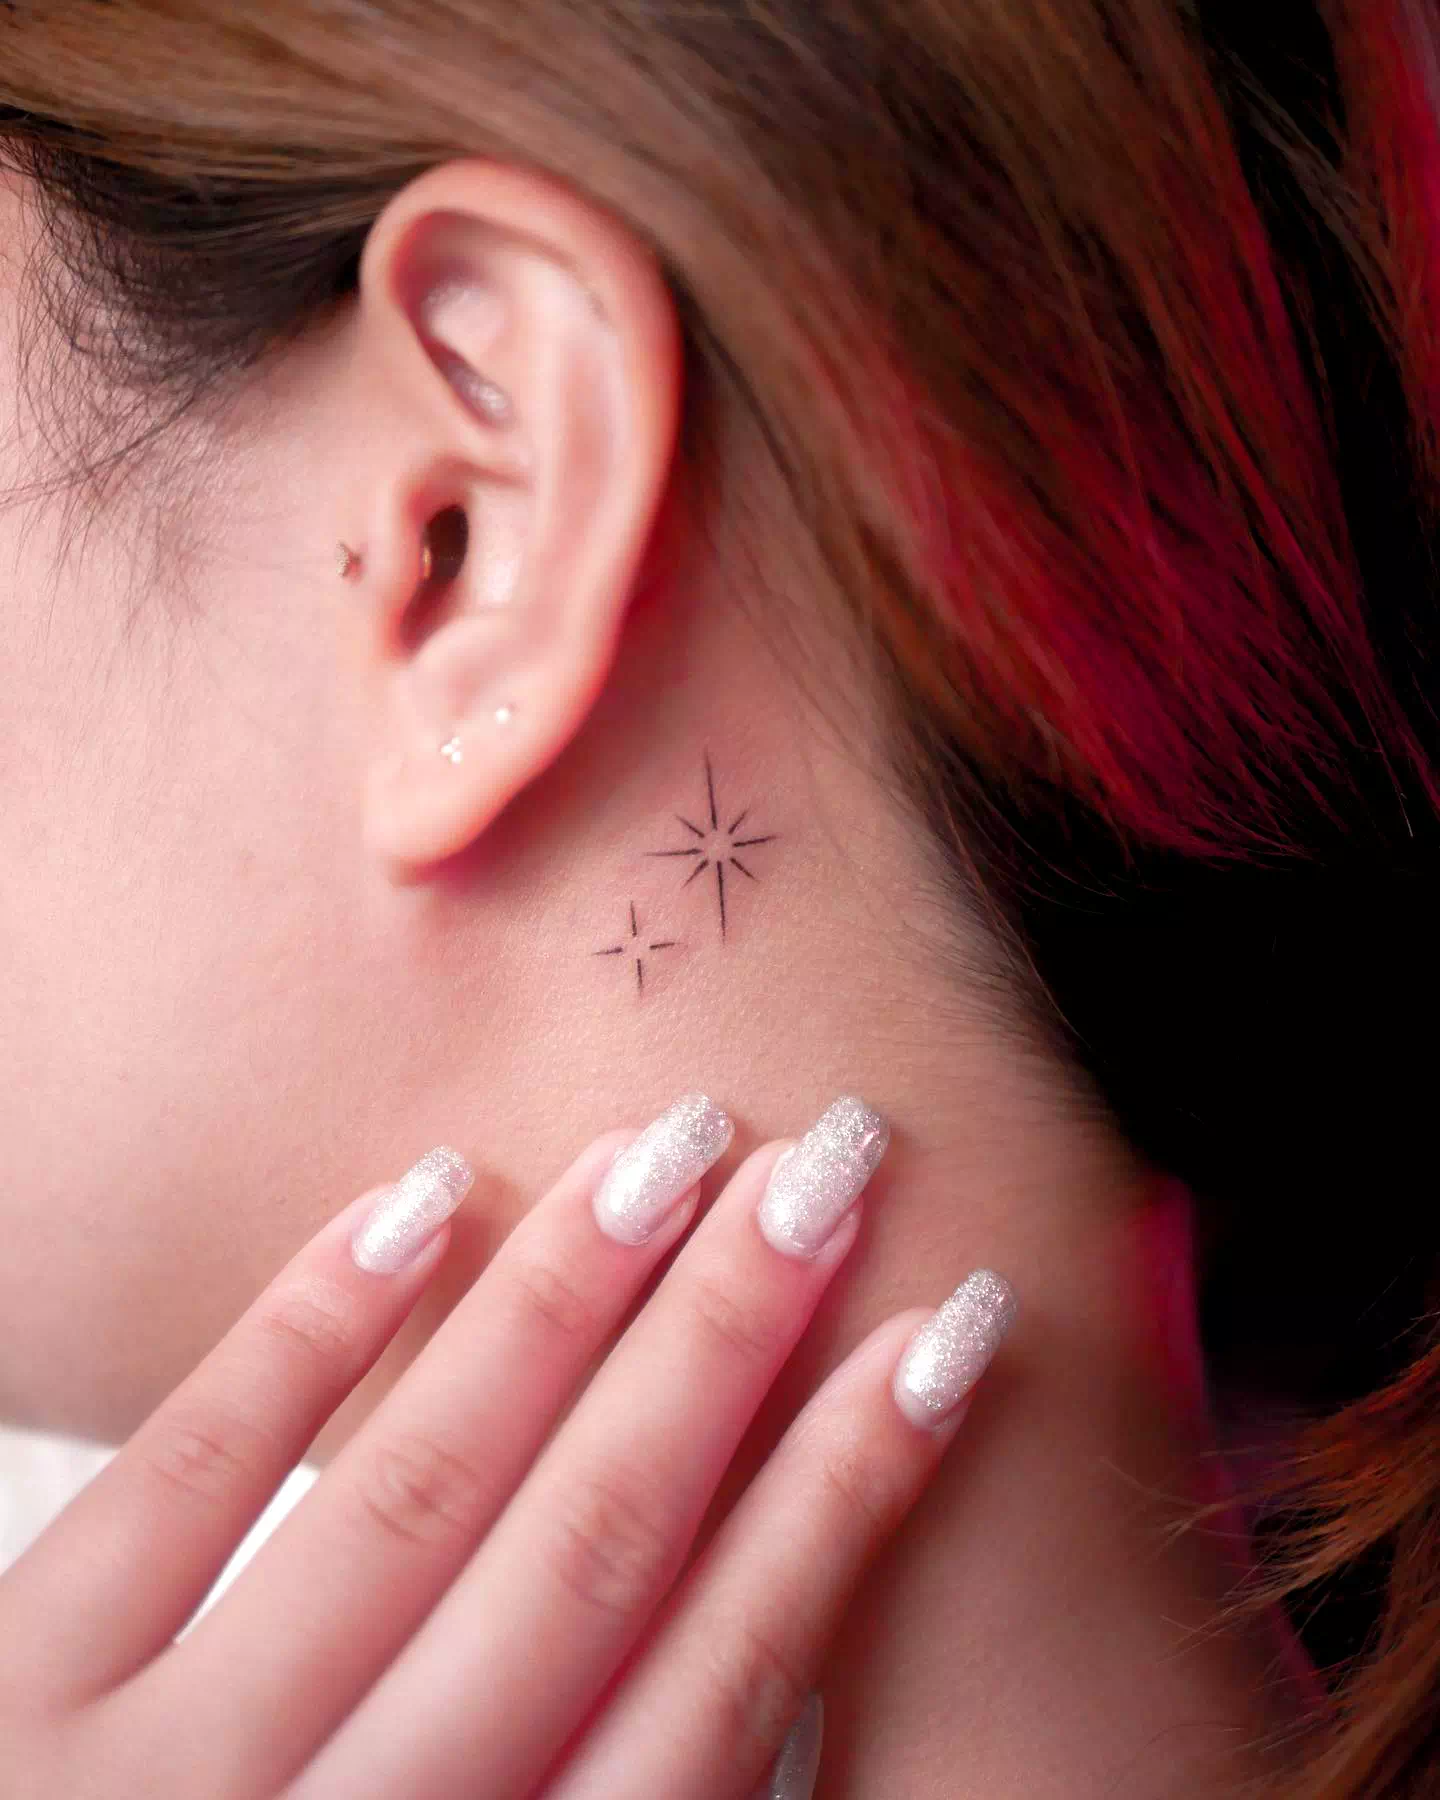 Star neck tattoo 4